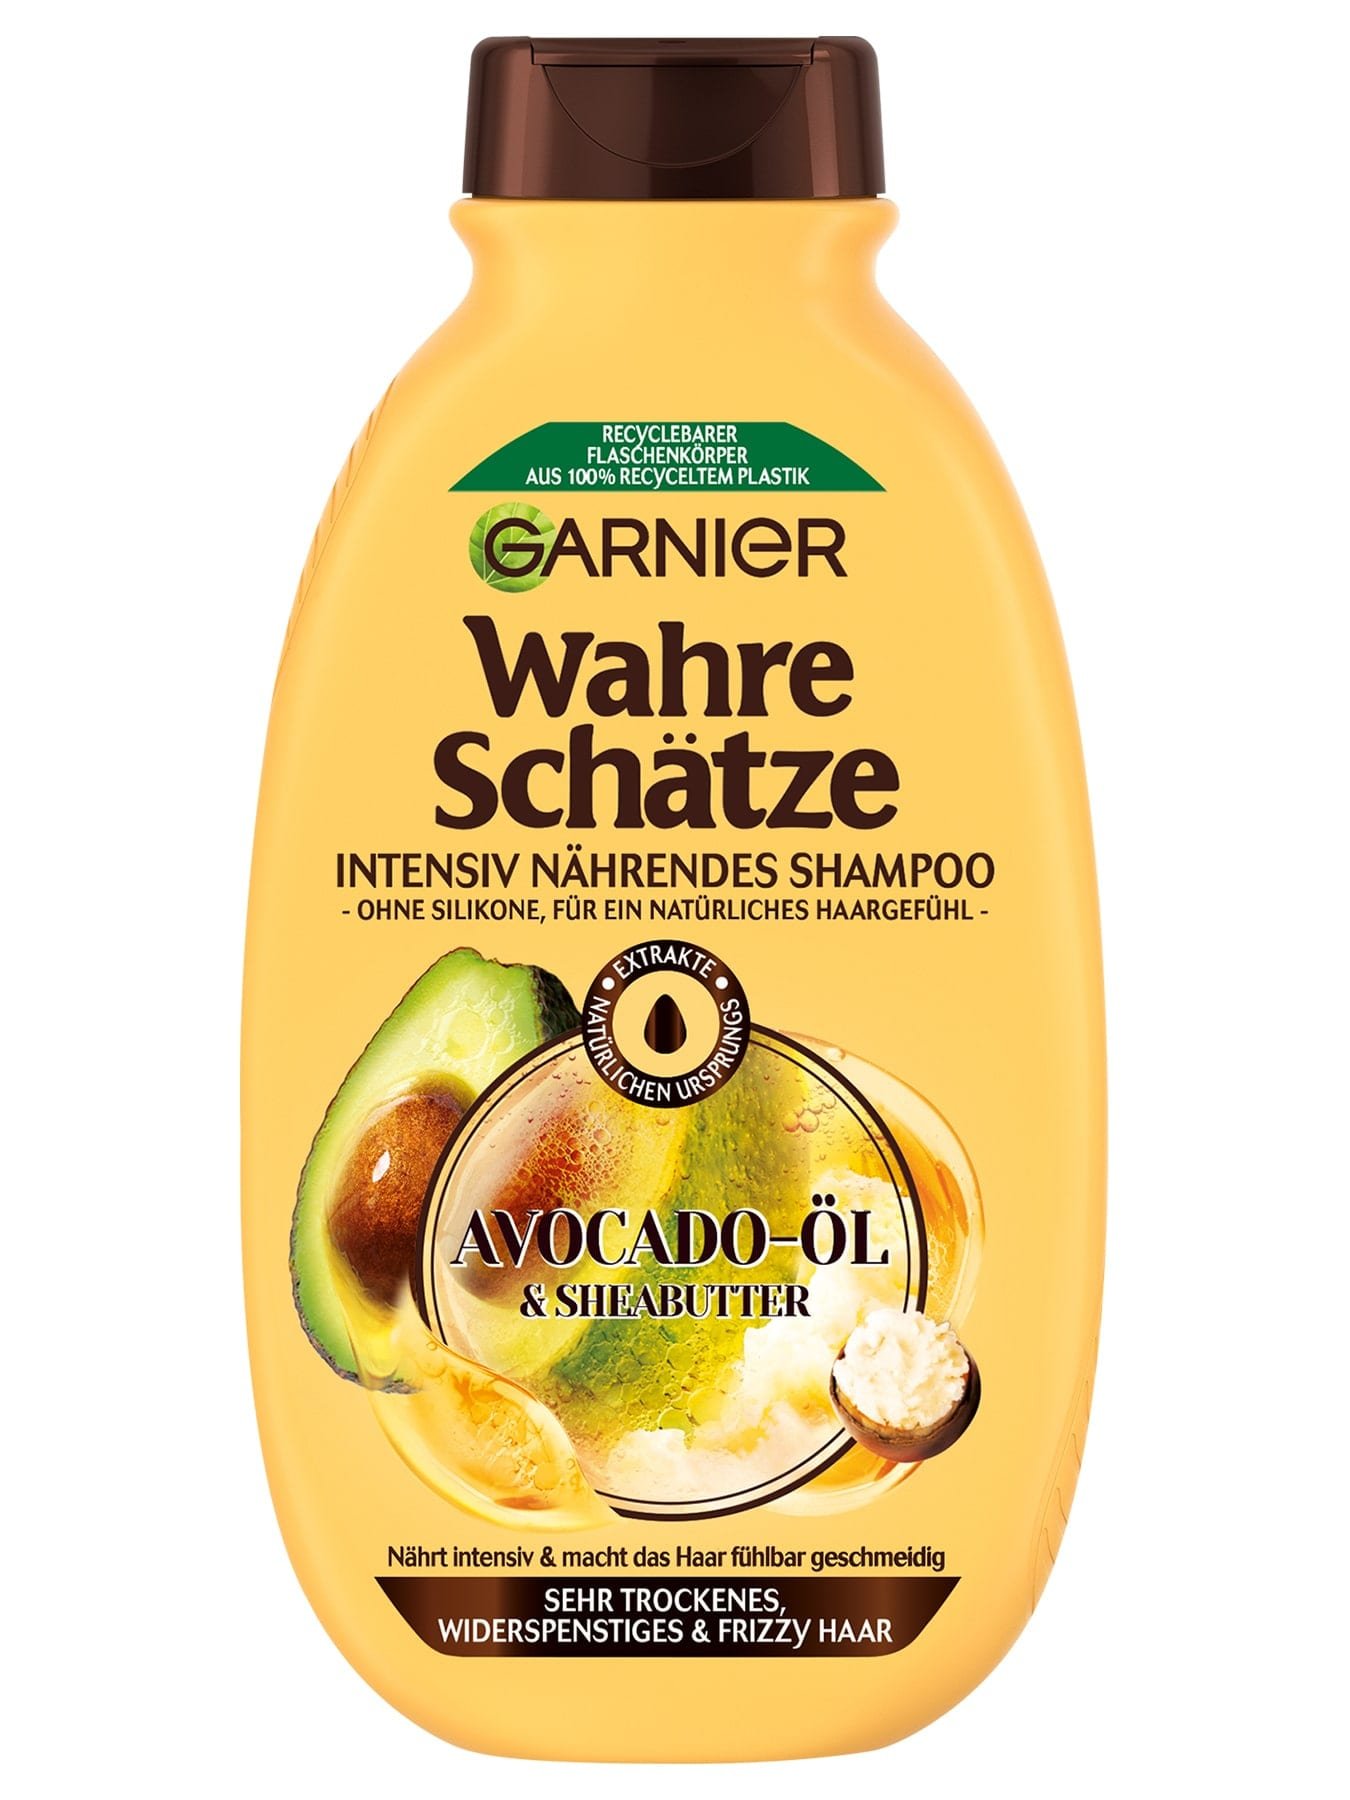 Wahre Schätze Intensiv Nährendes Shampoo Avocado-Öl & Sheabutter - Produktabbildung